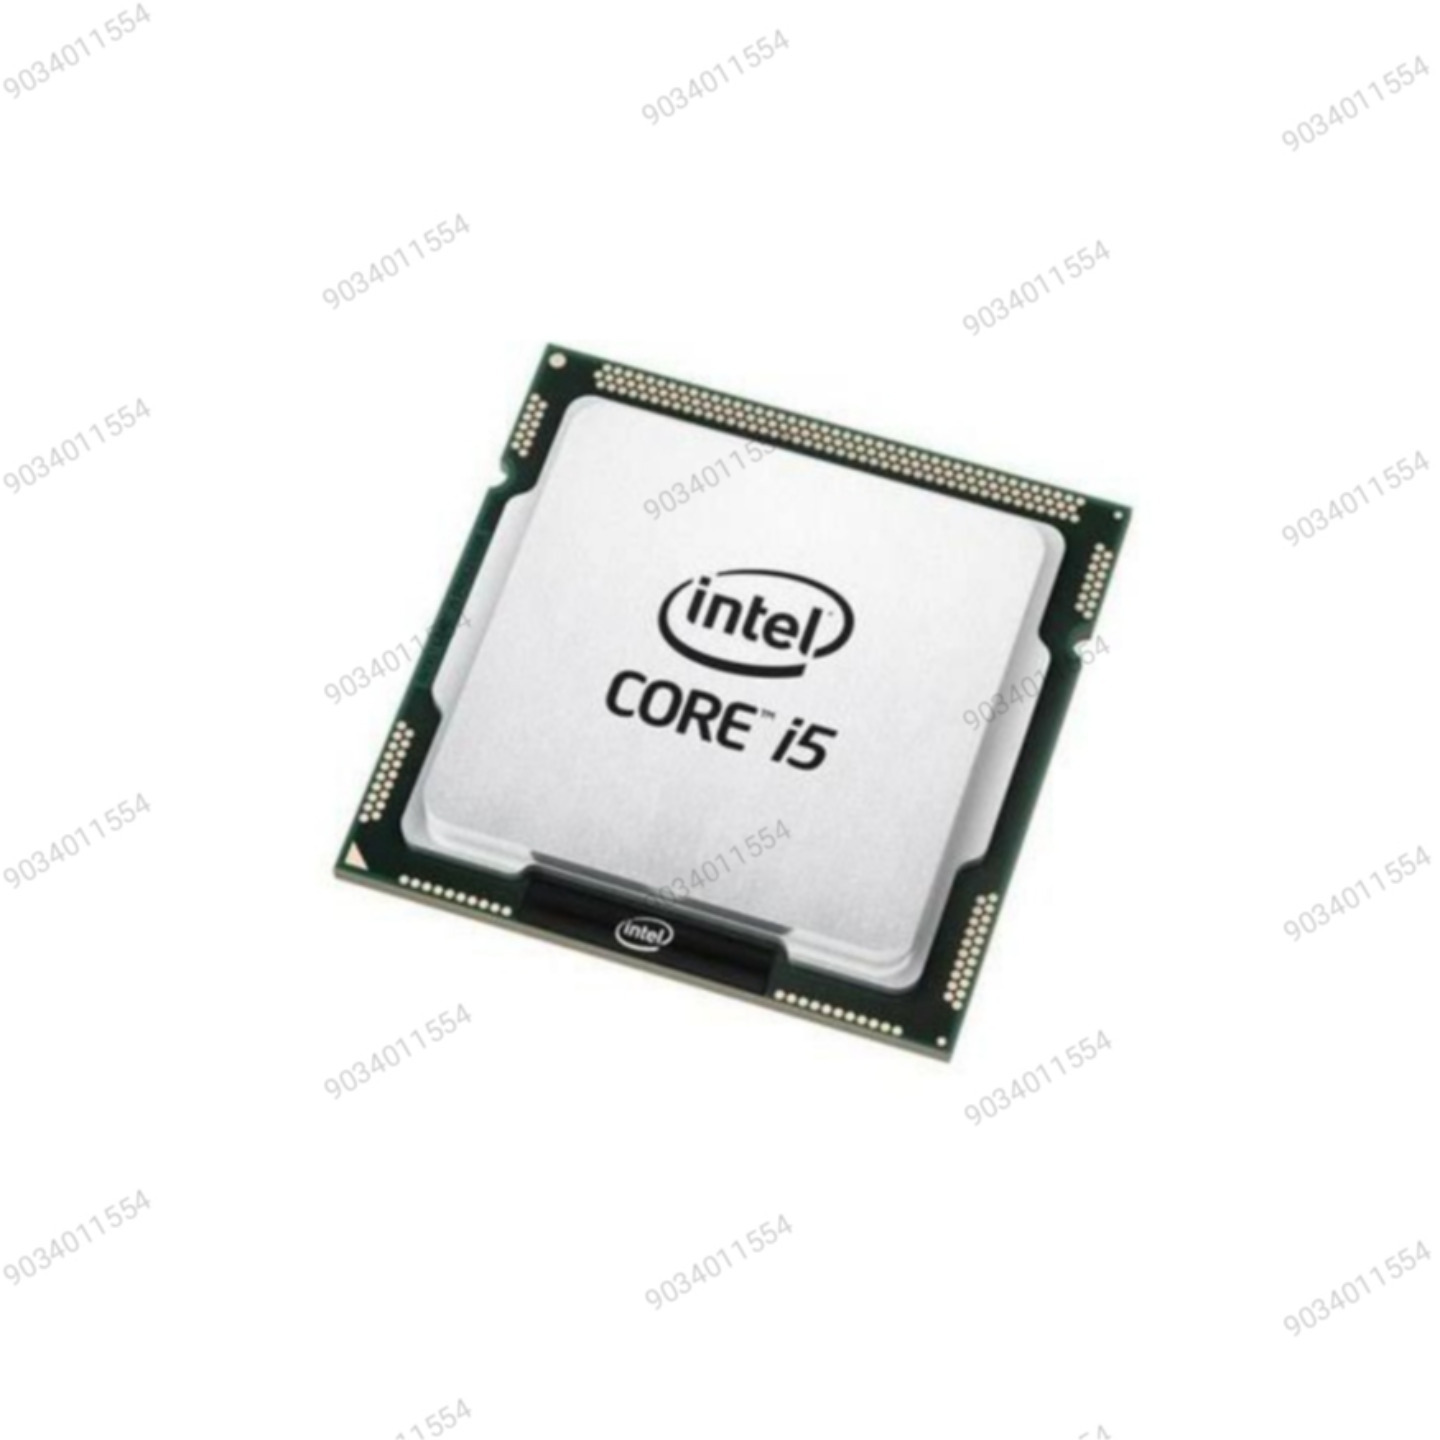 Core i5 6th Generation Processor